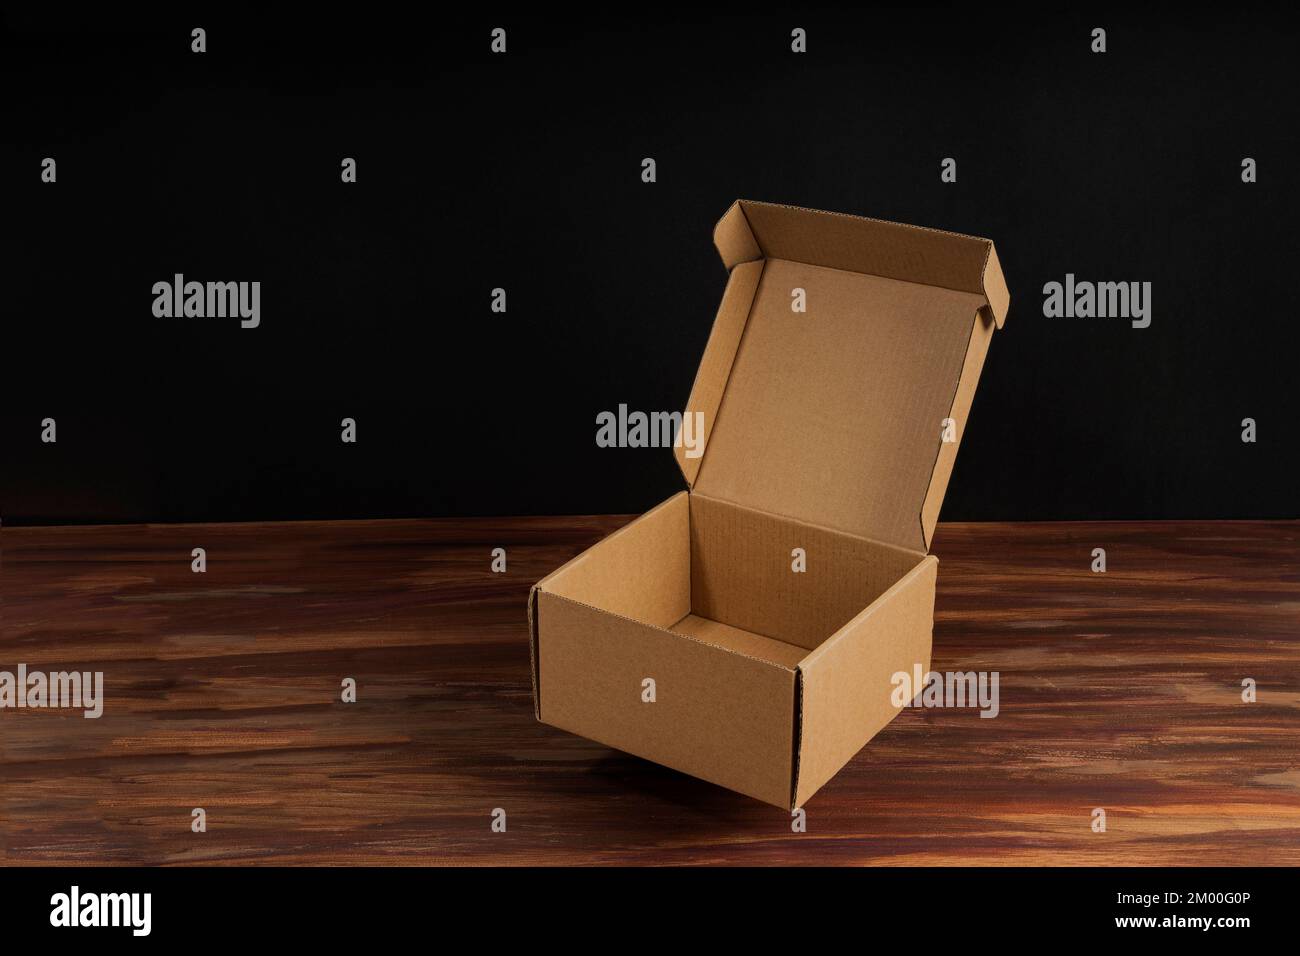 Scatola di cartone marrone aperta sulla superficie di legno con sfondo nero per la simulazione Foto Stock